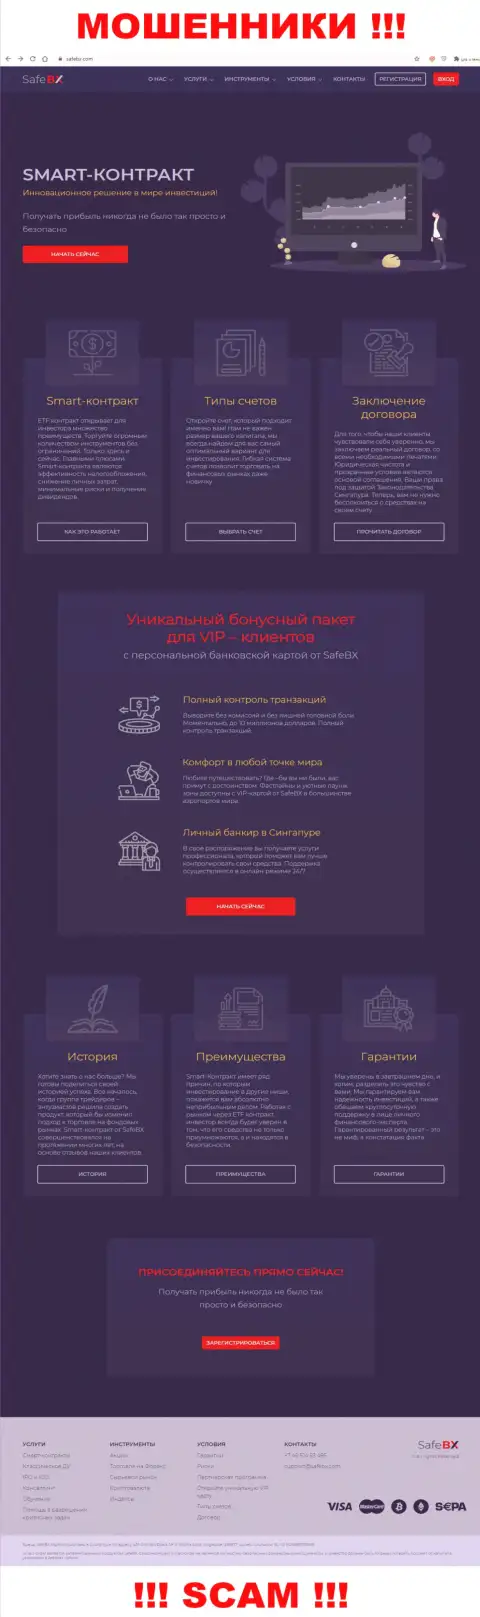 Скрин официального онлайн-сервиса СейфБх Ком - SafeBX Com